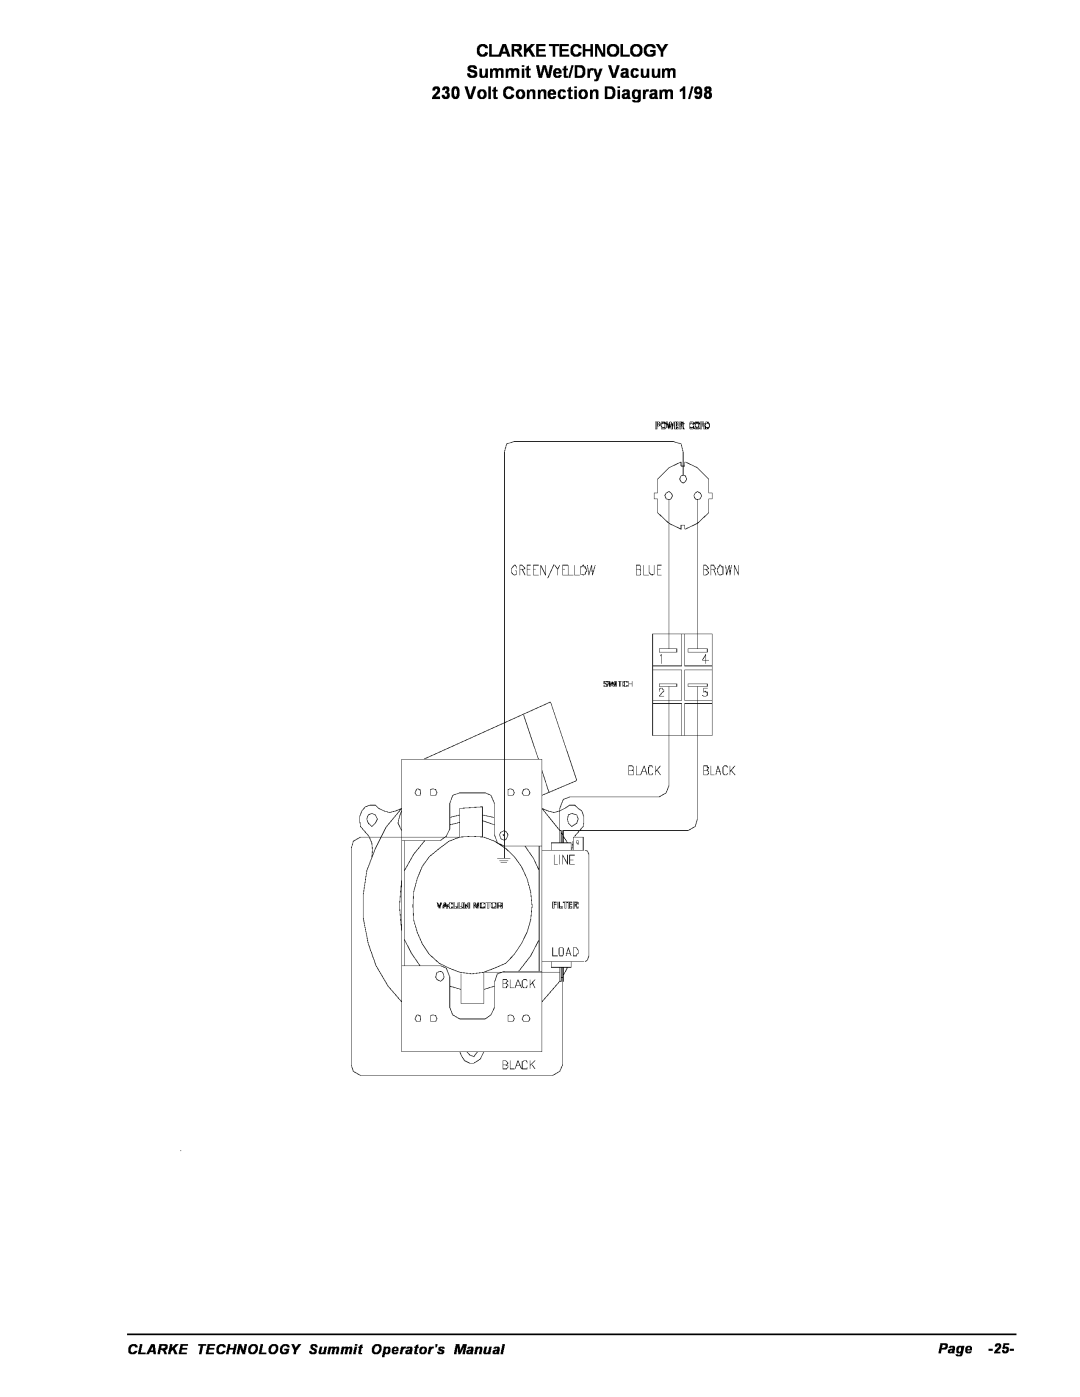 Nilfisk-ALTO manuel dutilisation CLARKETECHNOLOGY Summit Wet/Dry Vacuum, Volt Connection Diagram 1/98, Page 